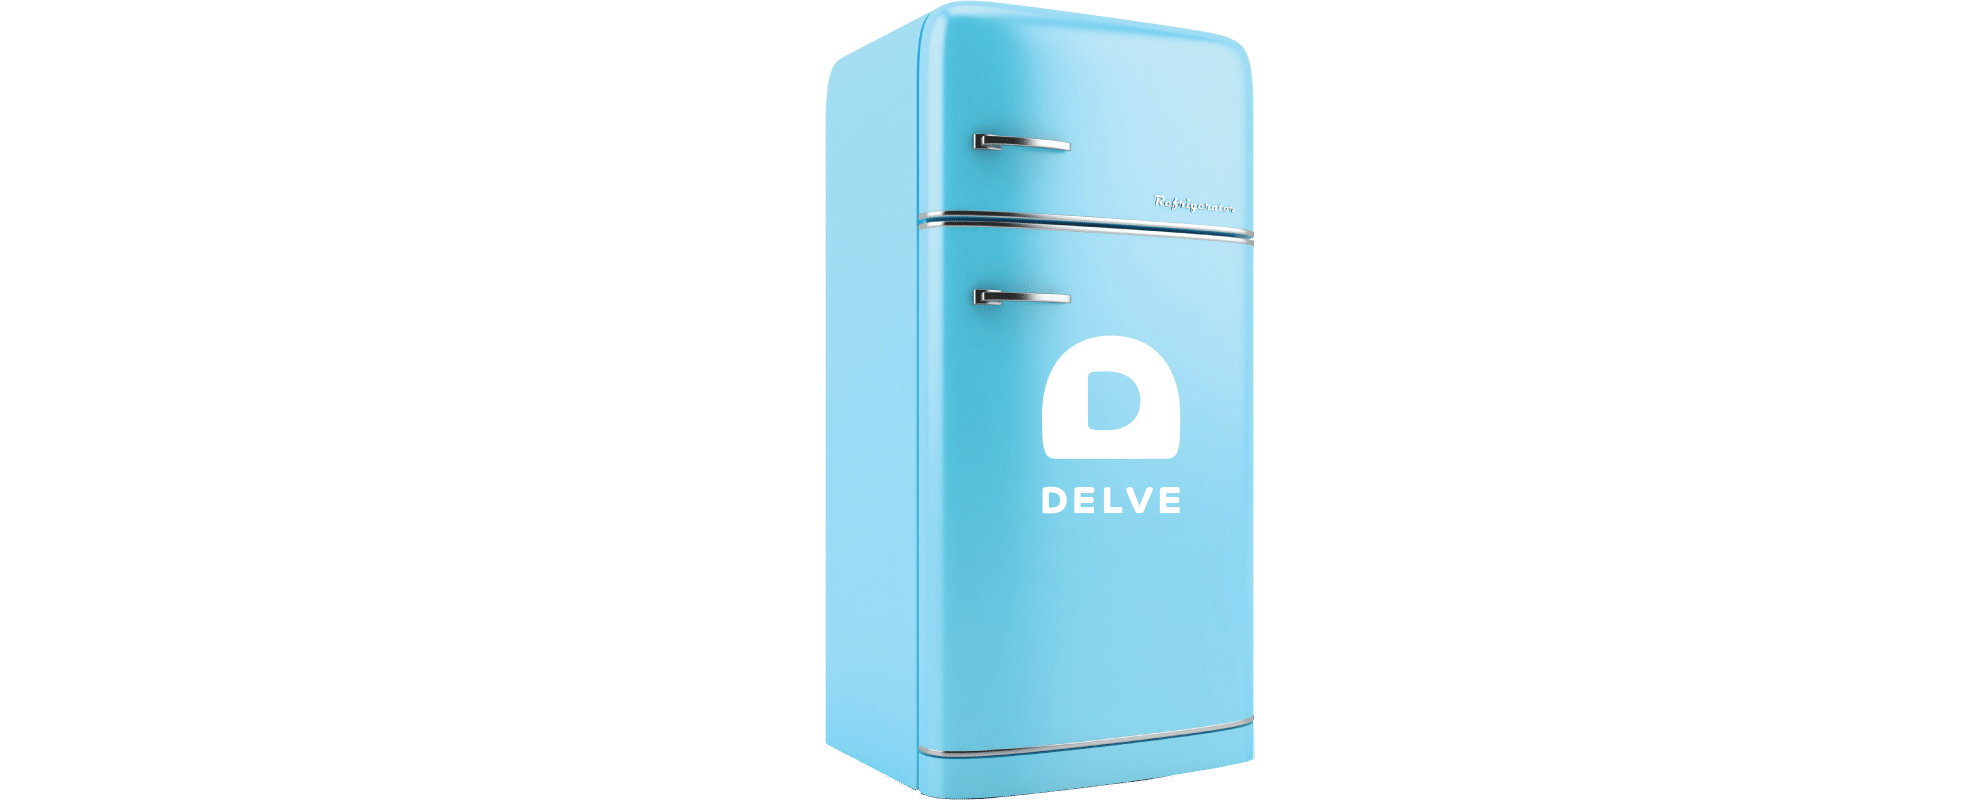 delve fridge overlay